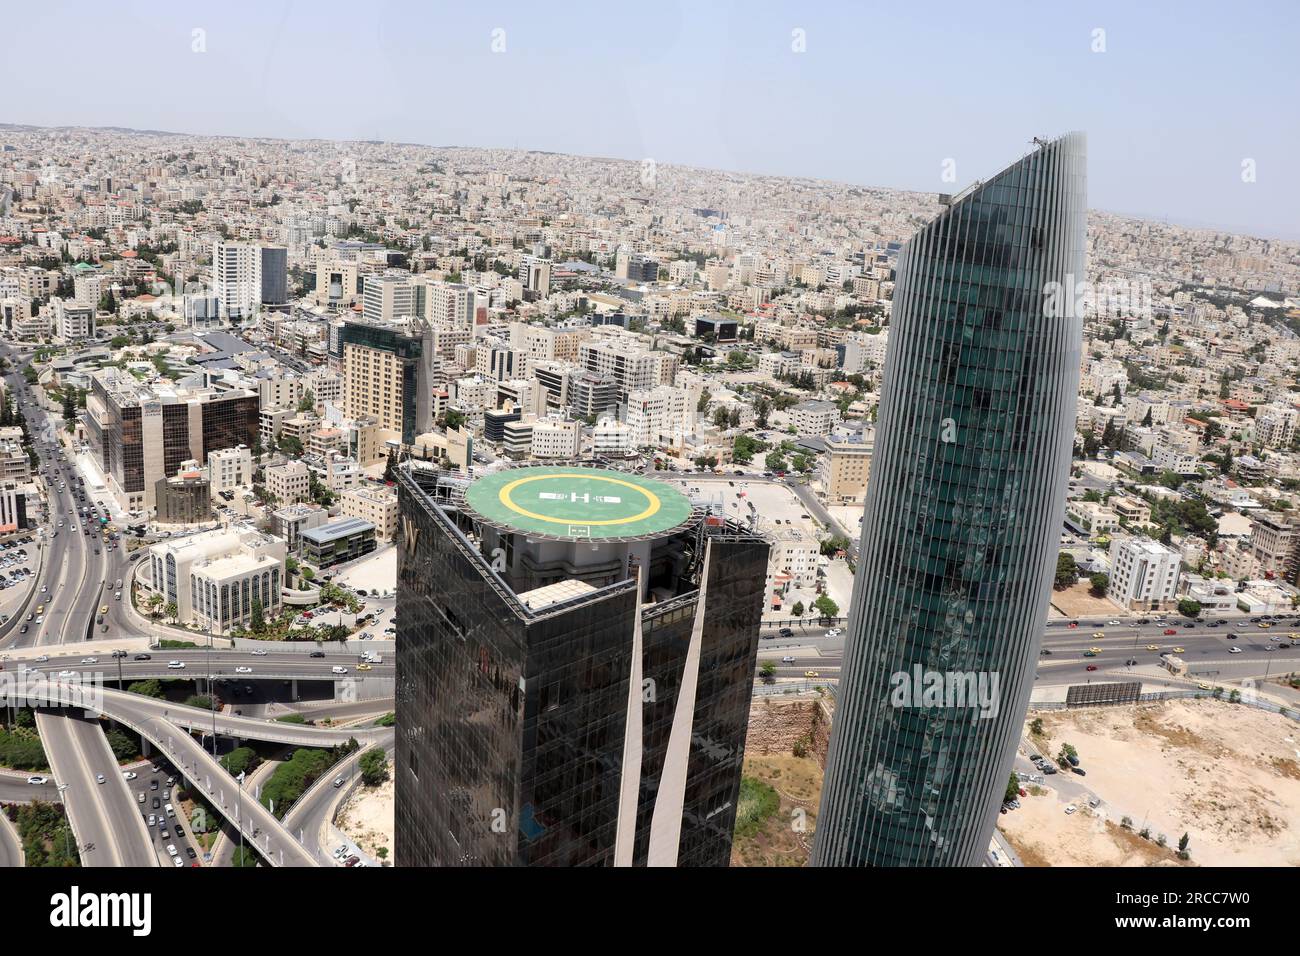 Jordanie - Amman tours, bâtiments et rues au Moyen-Orient (ponts et tours étonnants dans une belle ville arabe musulmane) Banque D'Images